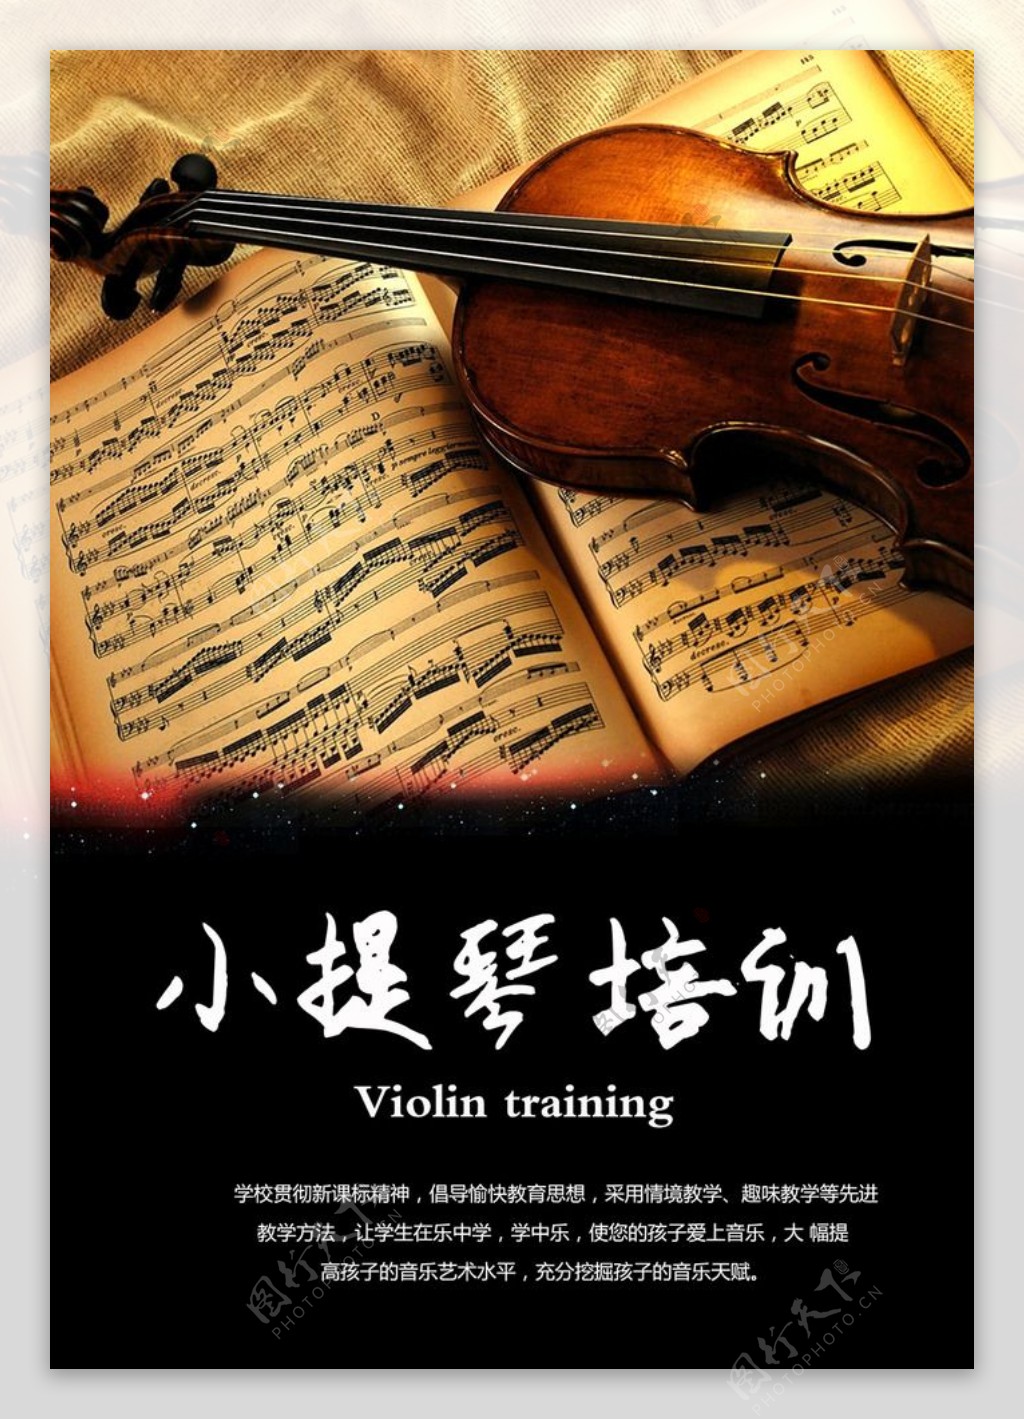 乐谱小提琴培训名师授课一对一辅导招生音乐艺术声乐图片下载 - 觅知网